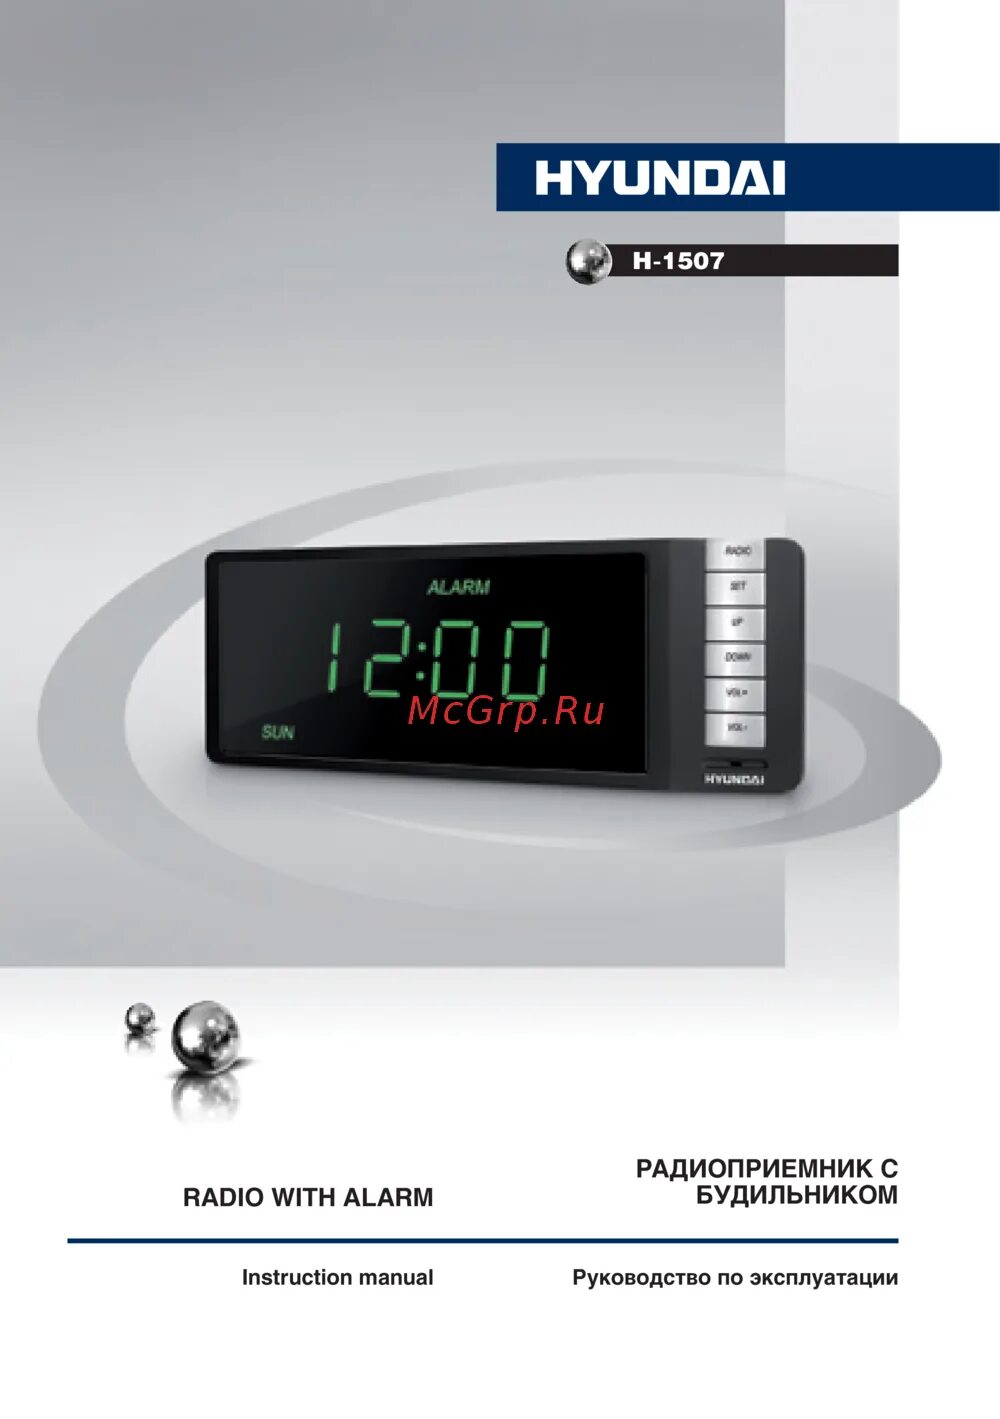 Как настроить часы hyundai. Радиобудильник Hyundai 1507. Радиоприемник Hyundai h-1507. Часы Хундай н 1507. Hyundai h-1505.